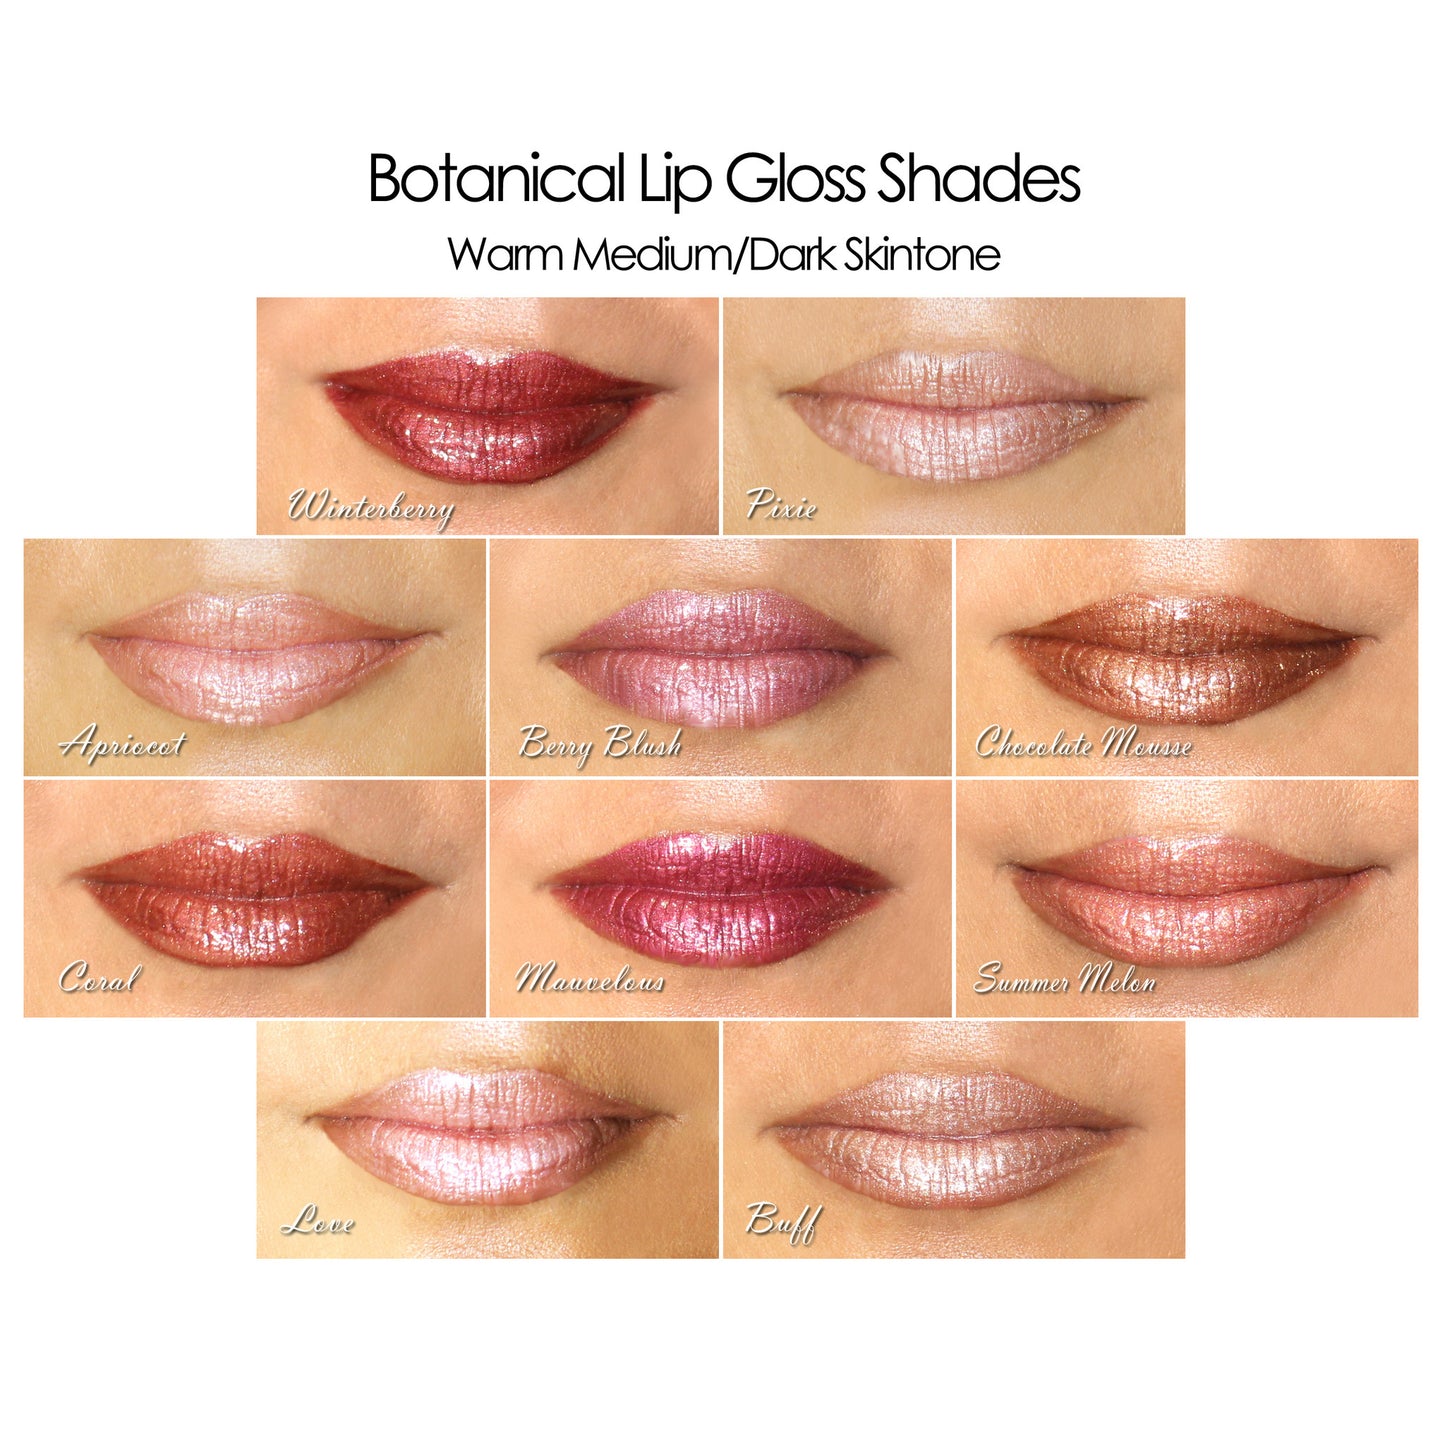 Botanical Lip Gloss